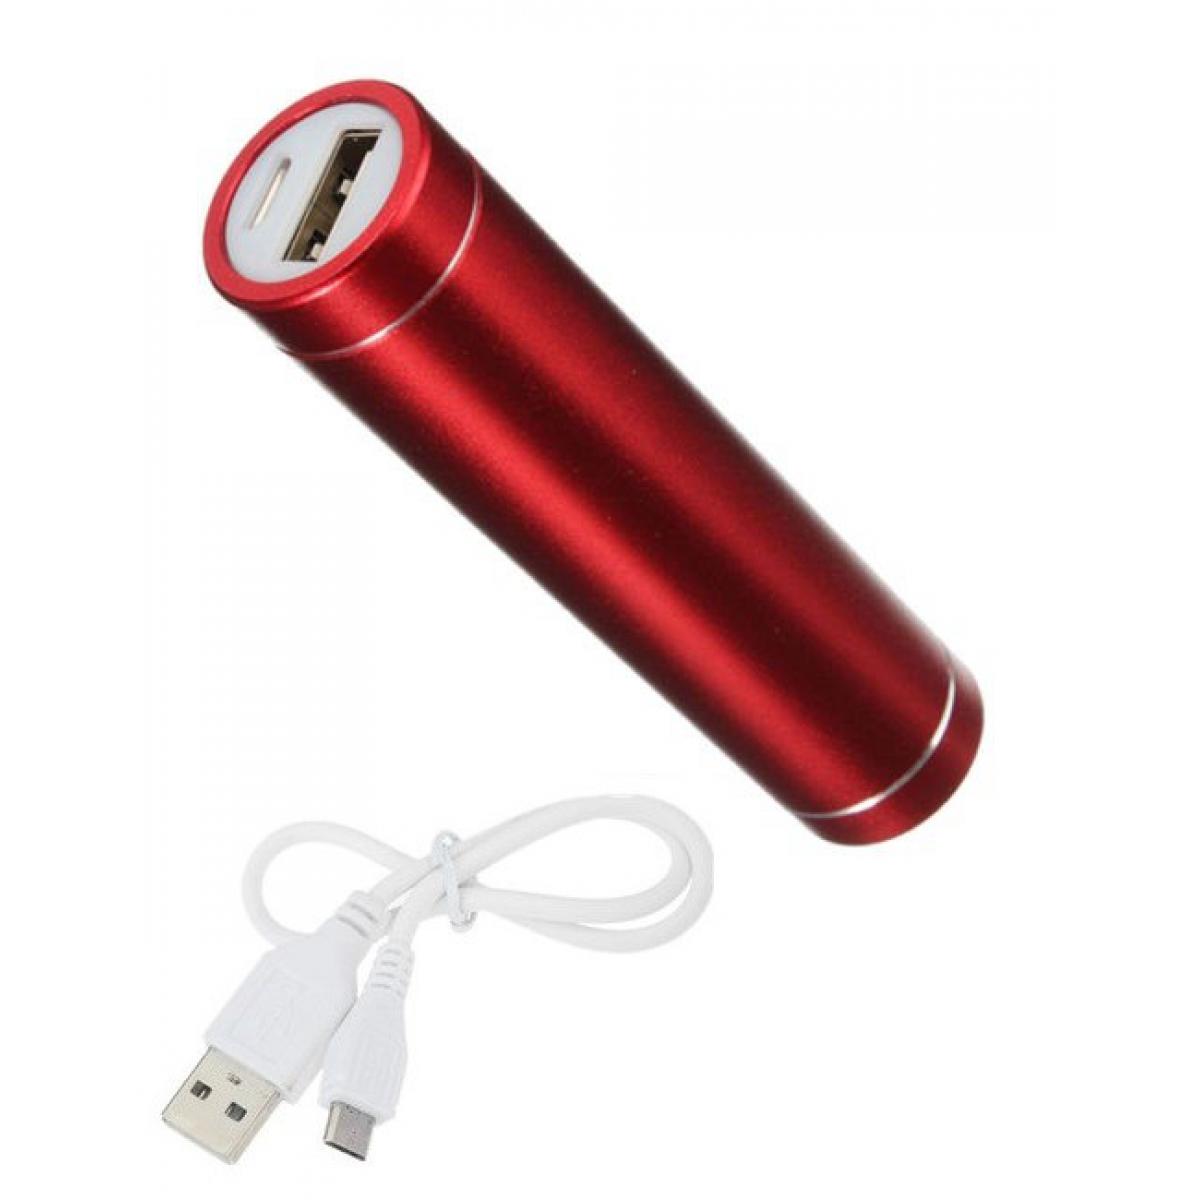 Shot - Batterie Chargeur Externe pour OPPO A5 Power Bank 2600mAh avec Cable USB/Mirco USB Secours Telephone (ROUGE) - Chargeur secteur téléphone